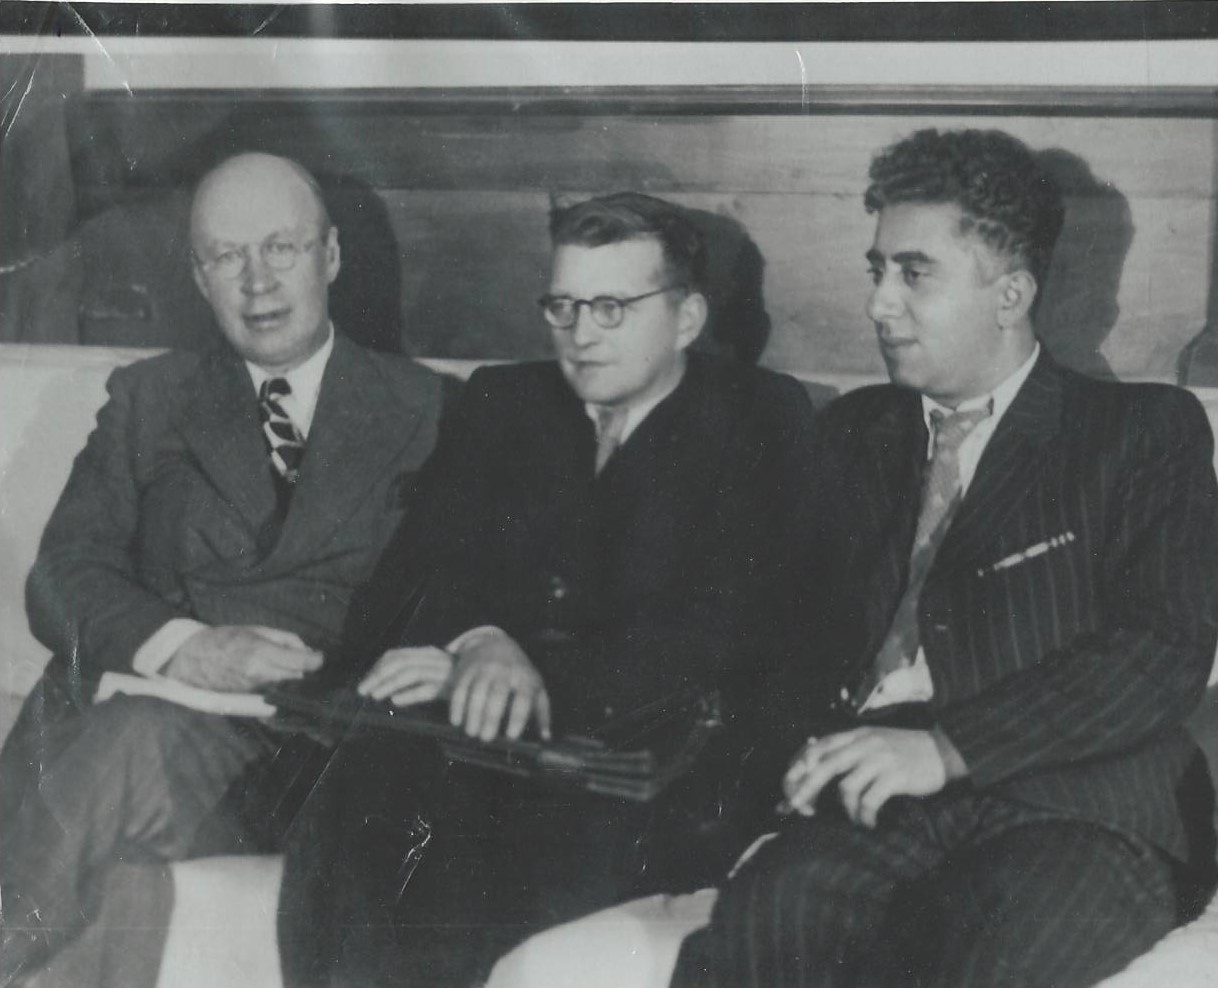 Լուսանկար .Ա.Խաչատրյանը կամպոզիտորներ Դ. Շոստակավիչի և Ս.Պրոկոֆևի հետ 